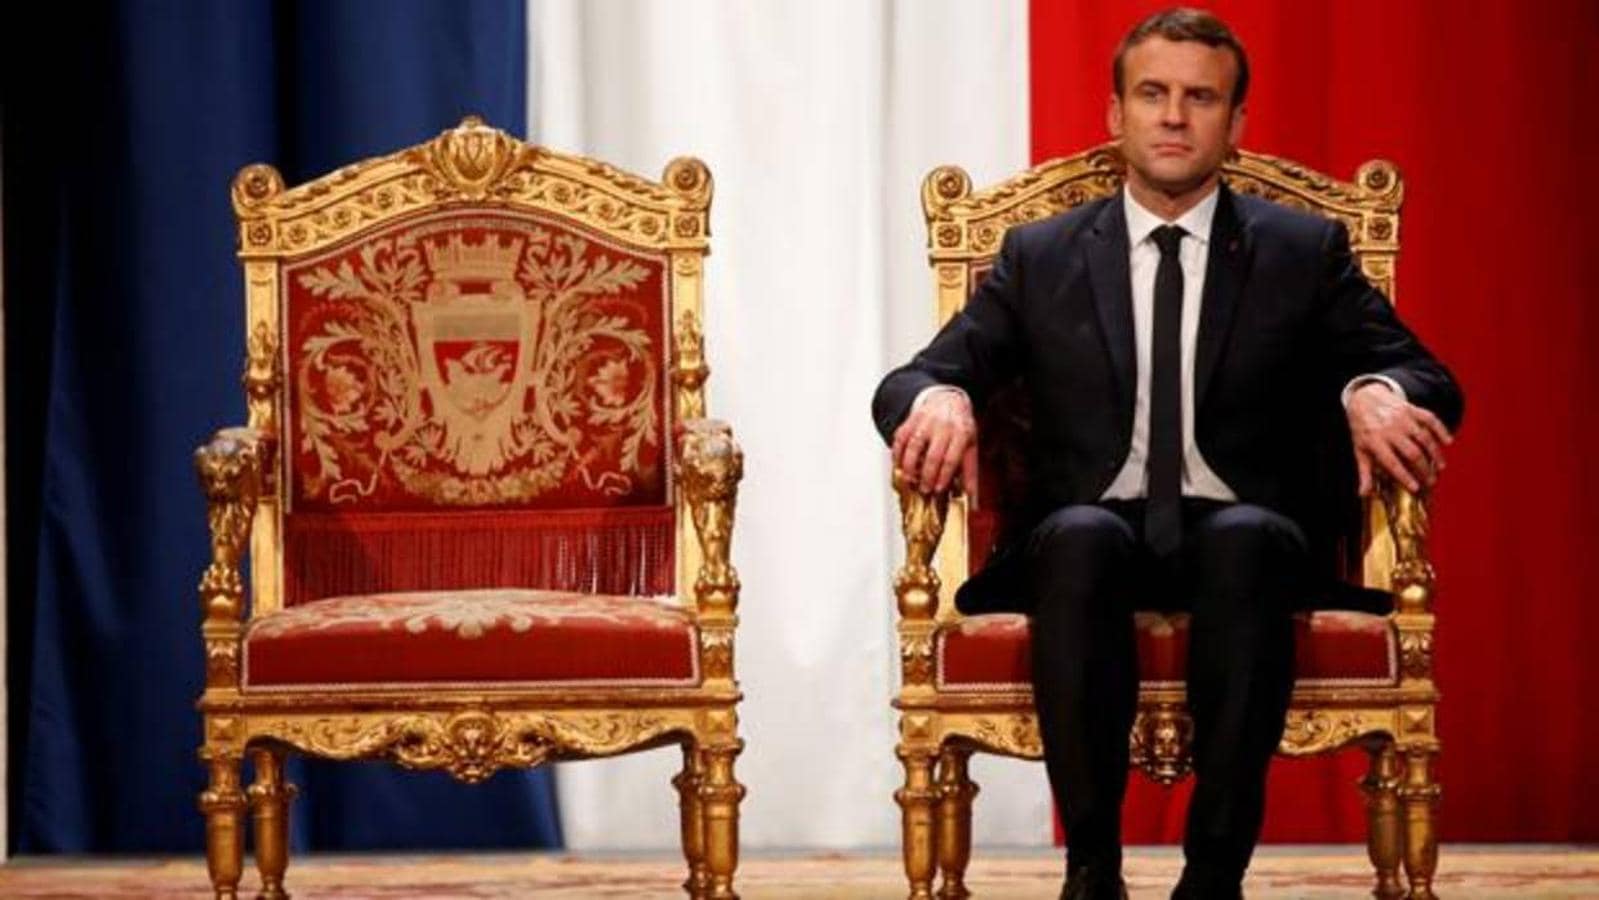 El escándalo llega con las mujeres de Macron. Diputadas, ministras o secretarias de Estado, varias políticas francesas han sufrido ataques machistas u homófobos, criticadas por su forma de vestir, su color de piel o sus ingresos económicos